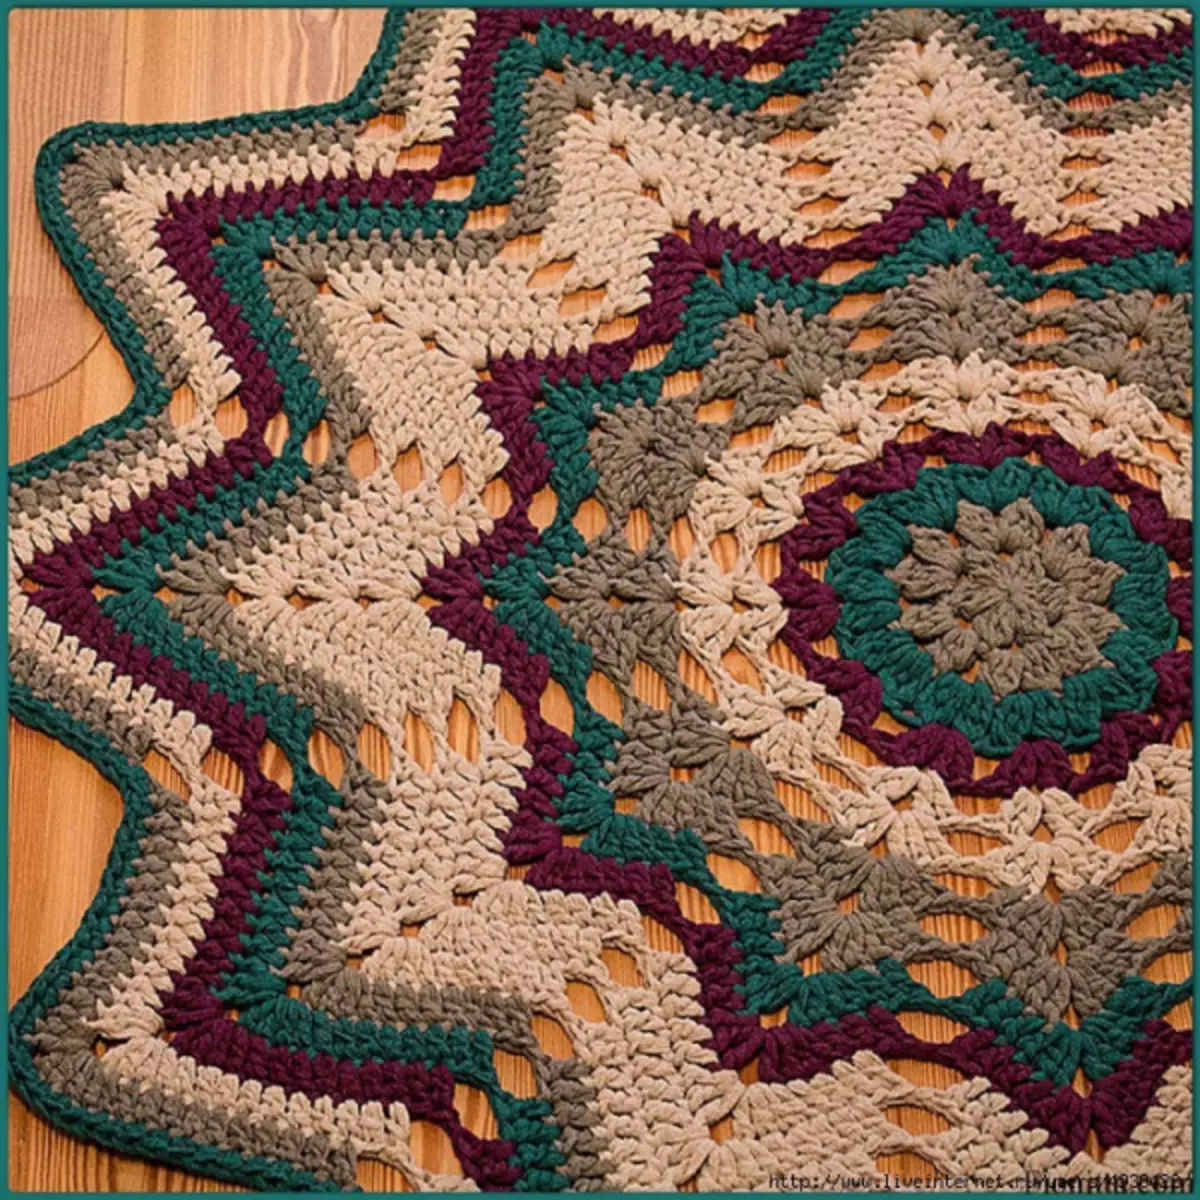 Crochet χαλιά από κορδόνι και από πακέτα με περιγραφή και φωτογραφία